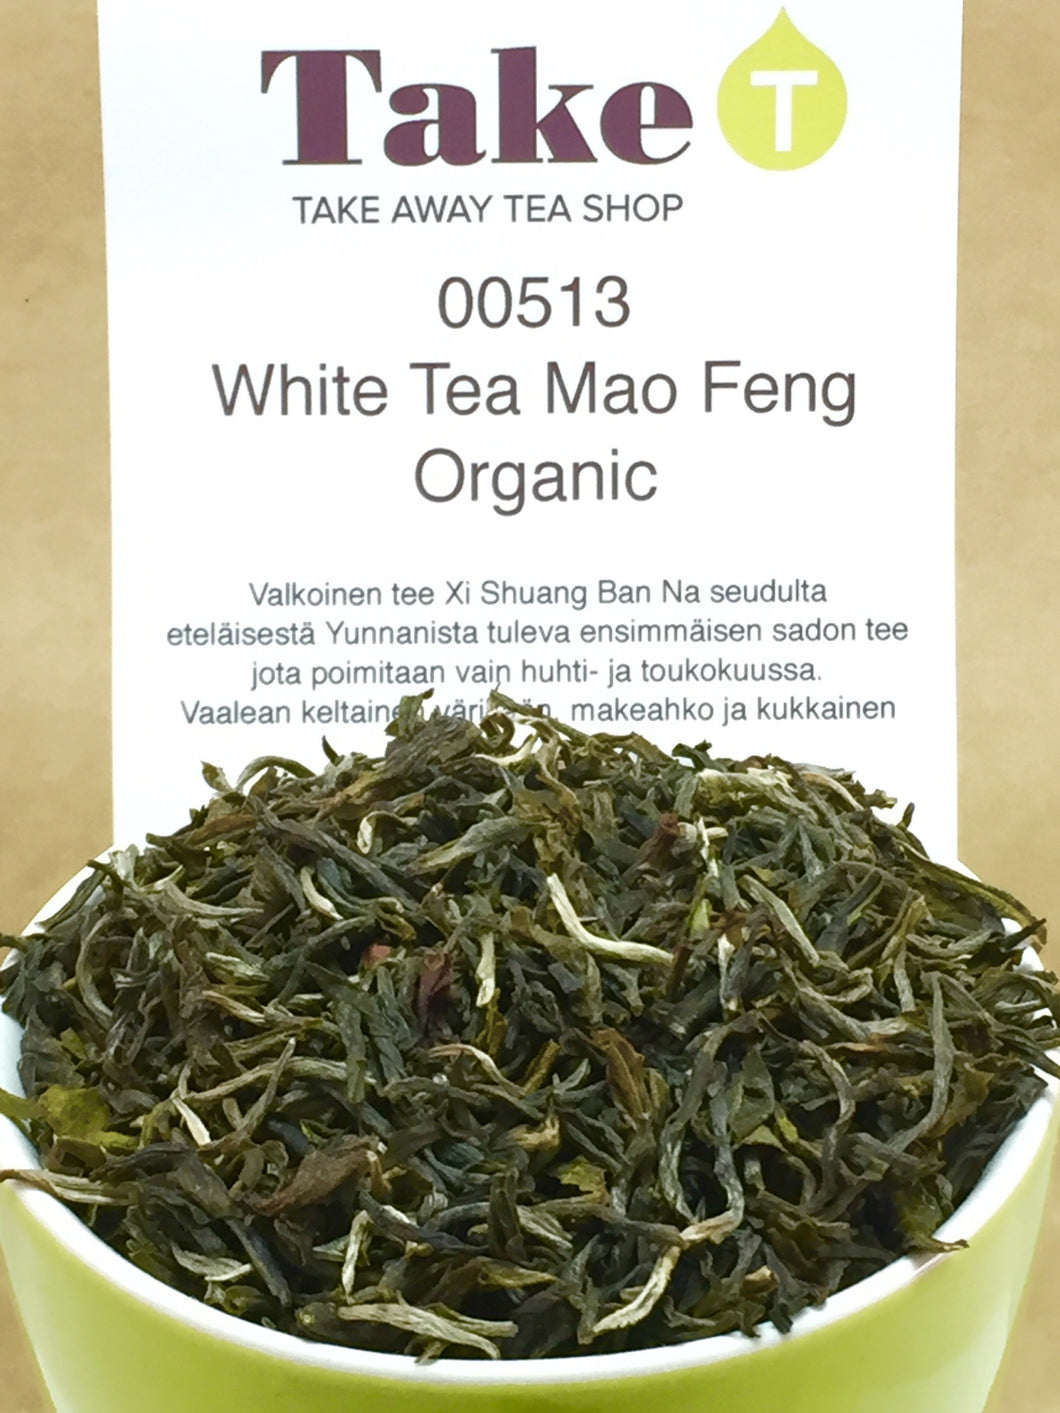 White Tea Mao Feng Organic